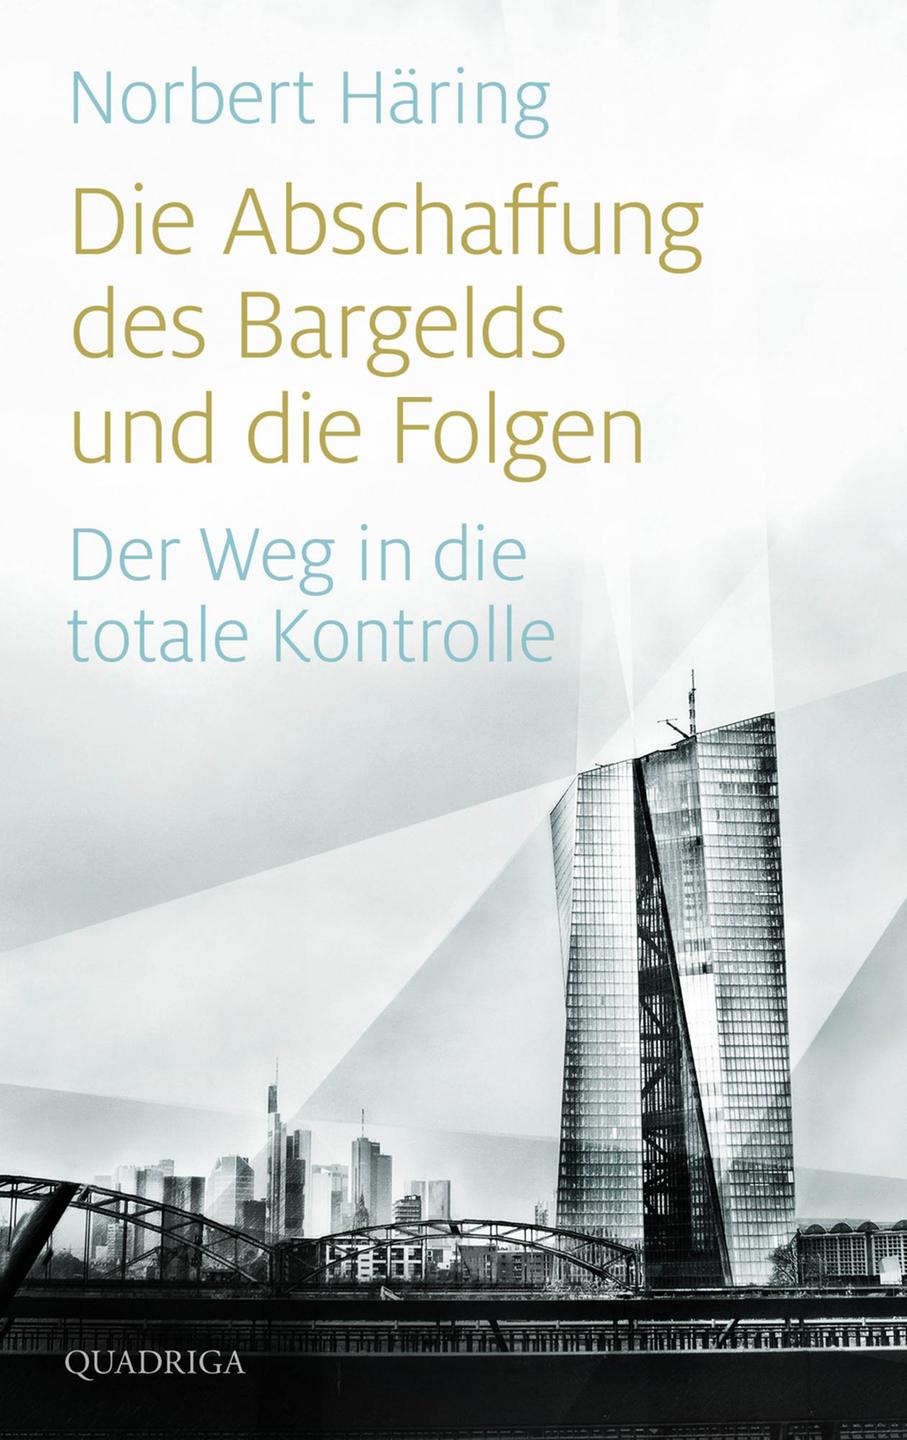 Cover - Norbert Häring: "Die Abschaffung des Bargelds und die Folgen"